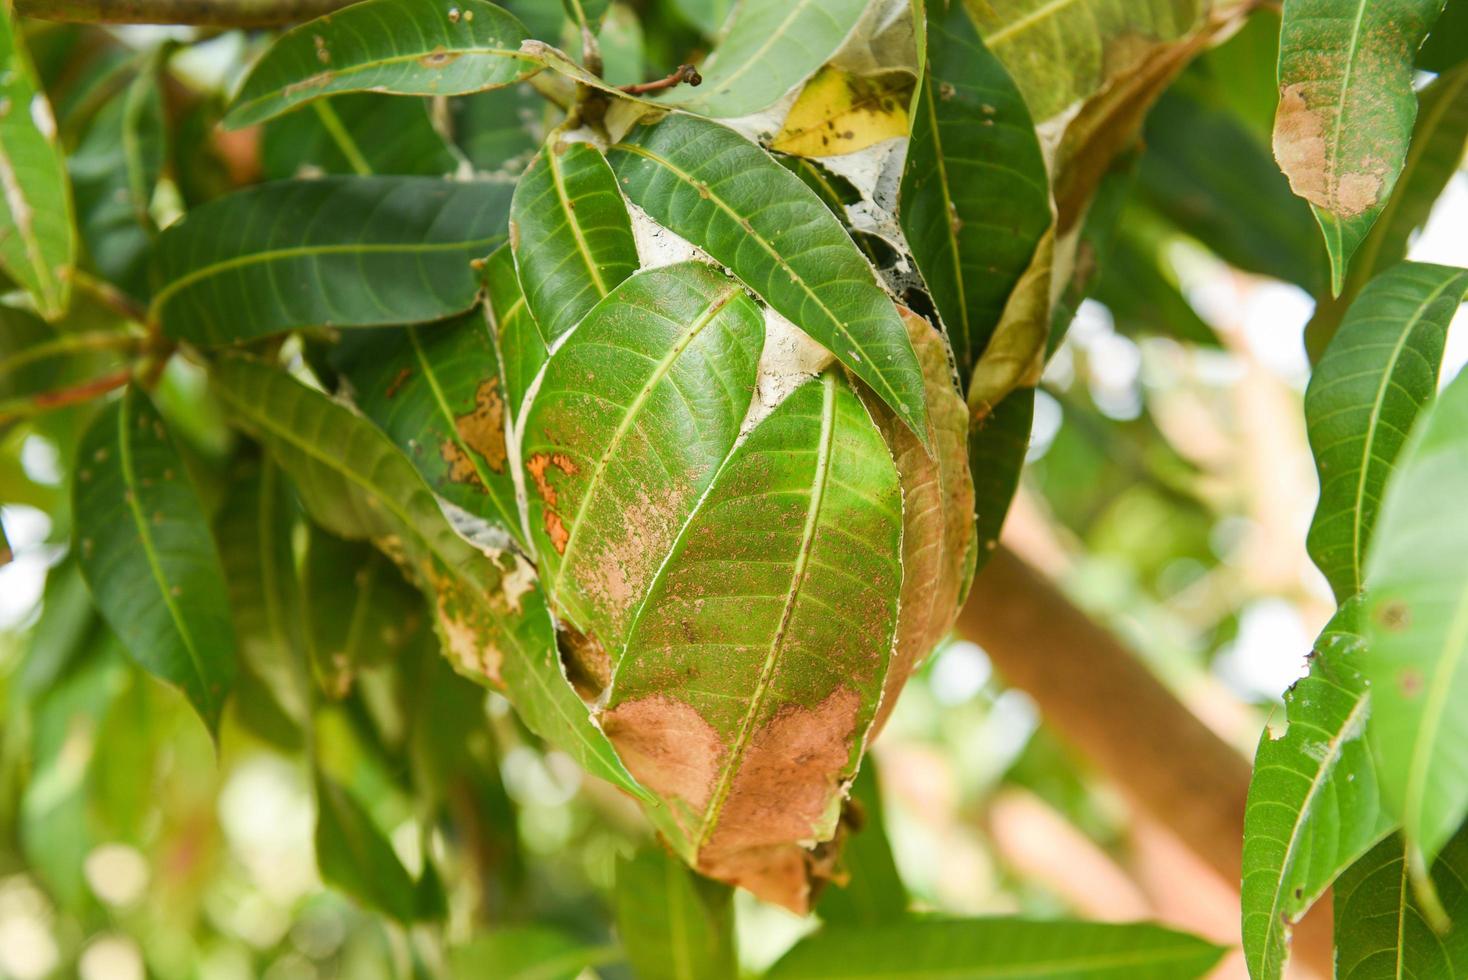 röd myra på mangoträd - myrbo med blad på träd foto